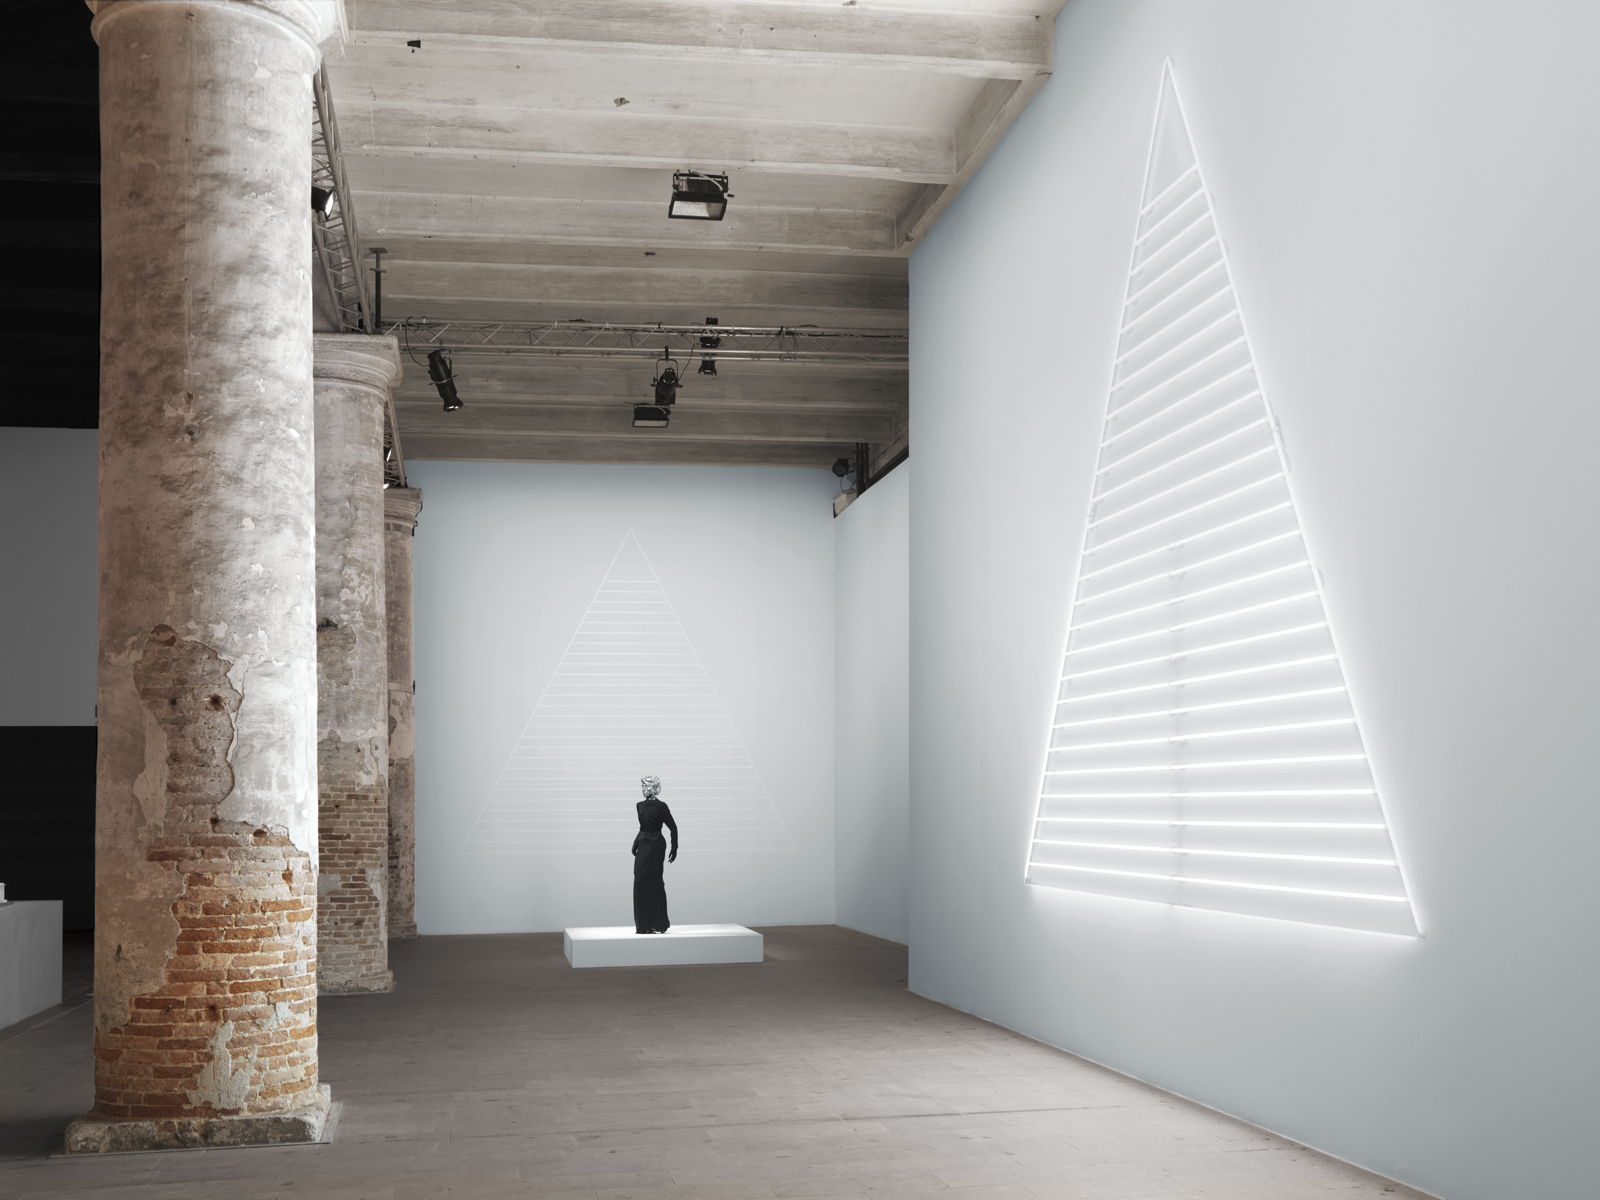 Mai-Thu Perret / "Illuminations", exhibition view, Arsenale, Biennale di Venezia / 2011